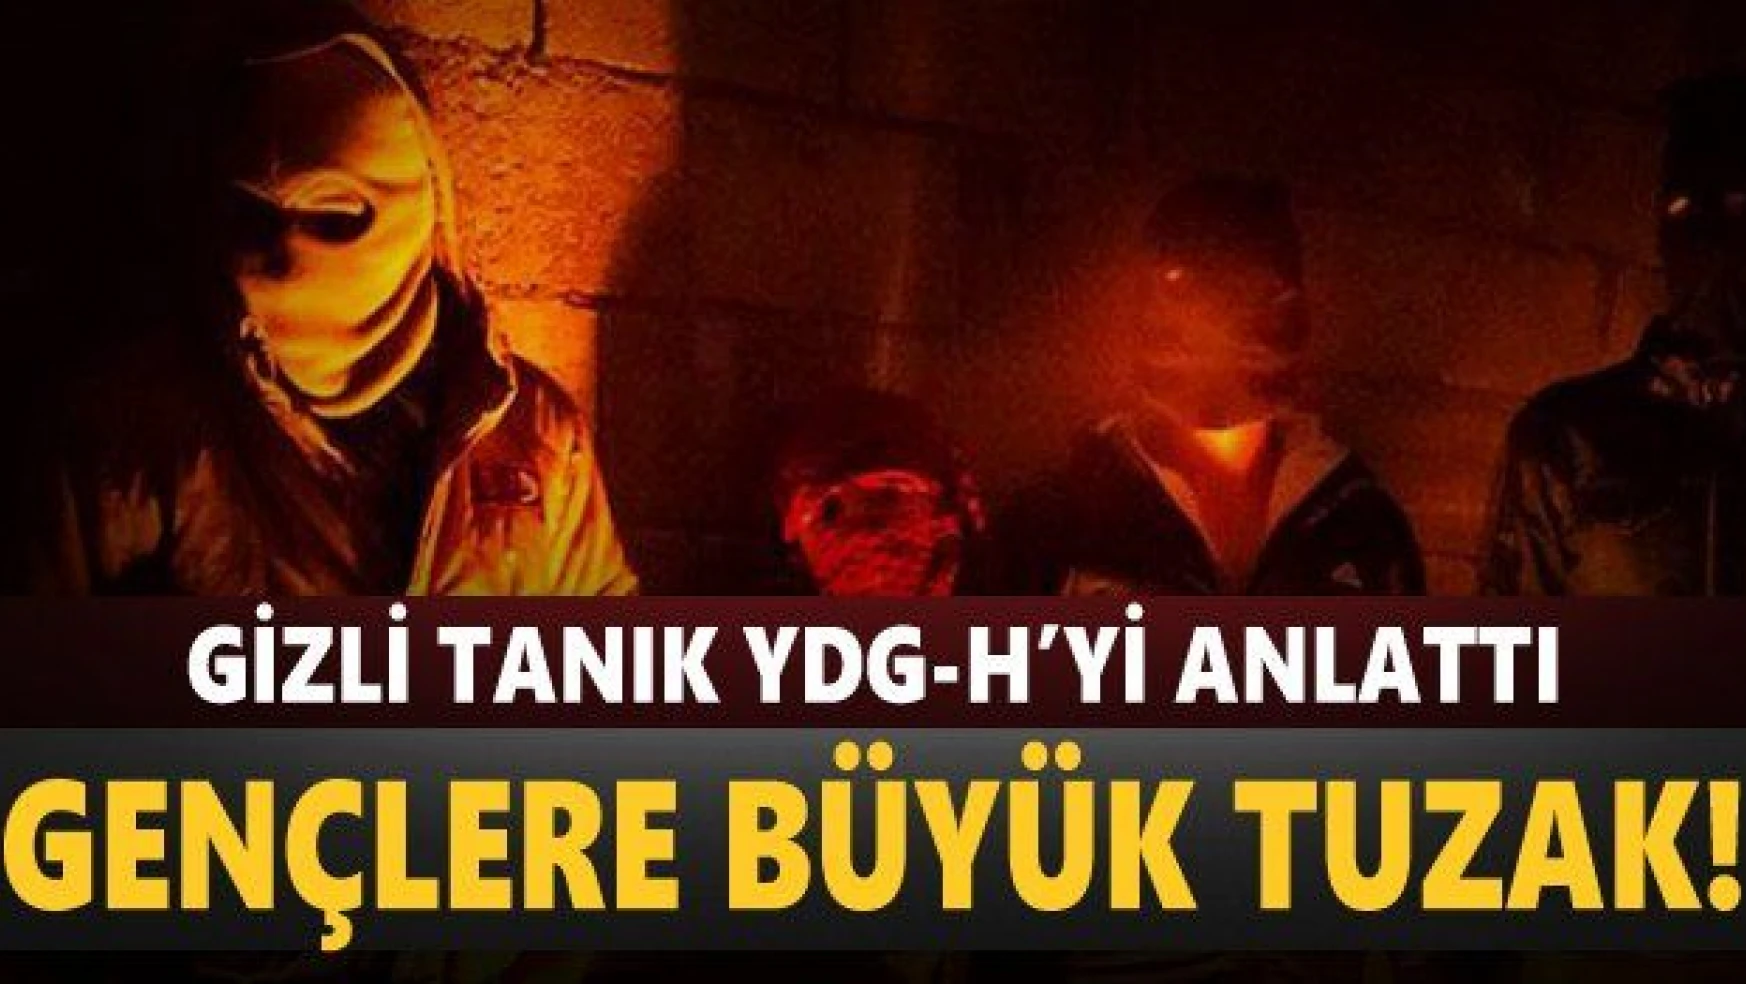 PKK gençleri nasıl tuzağına düşürüyor